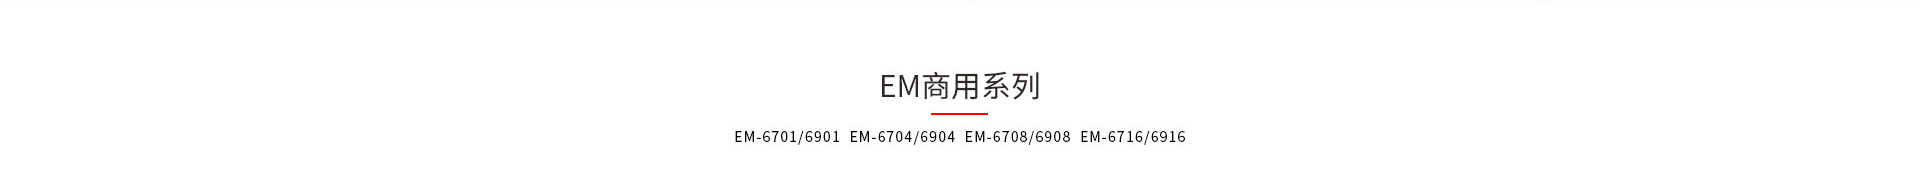 神盾卫士EM和EMI系列kvm切换器产品型号大全